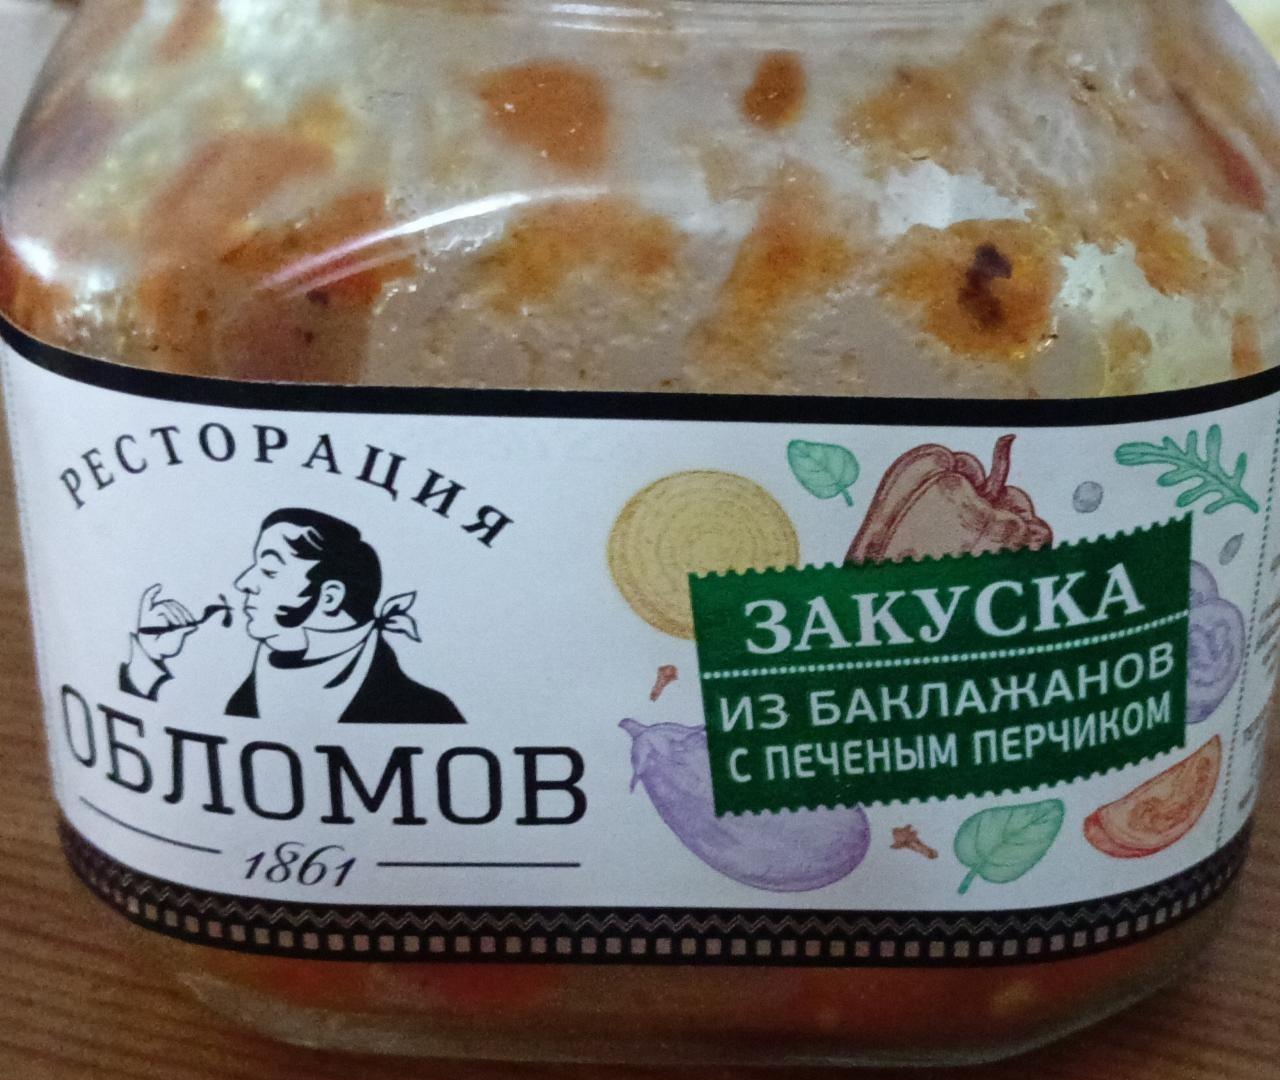 Фото - Закуска из баклажанов с печеным перчиком Ресторация Обломов